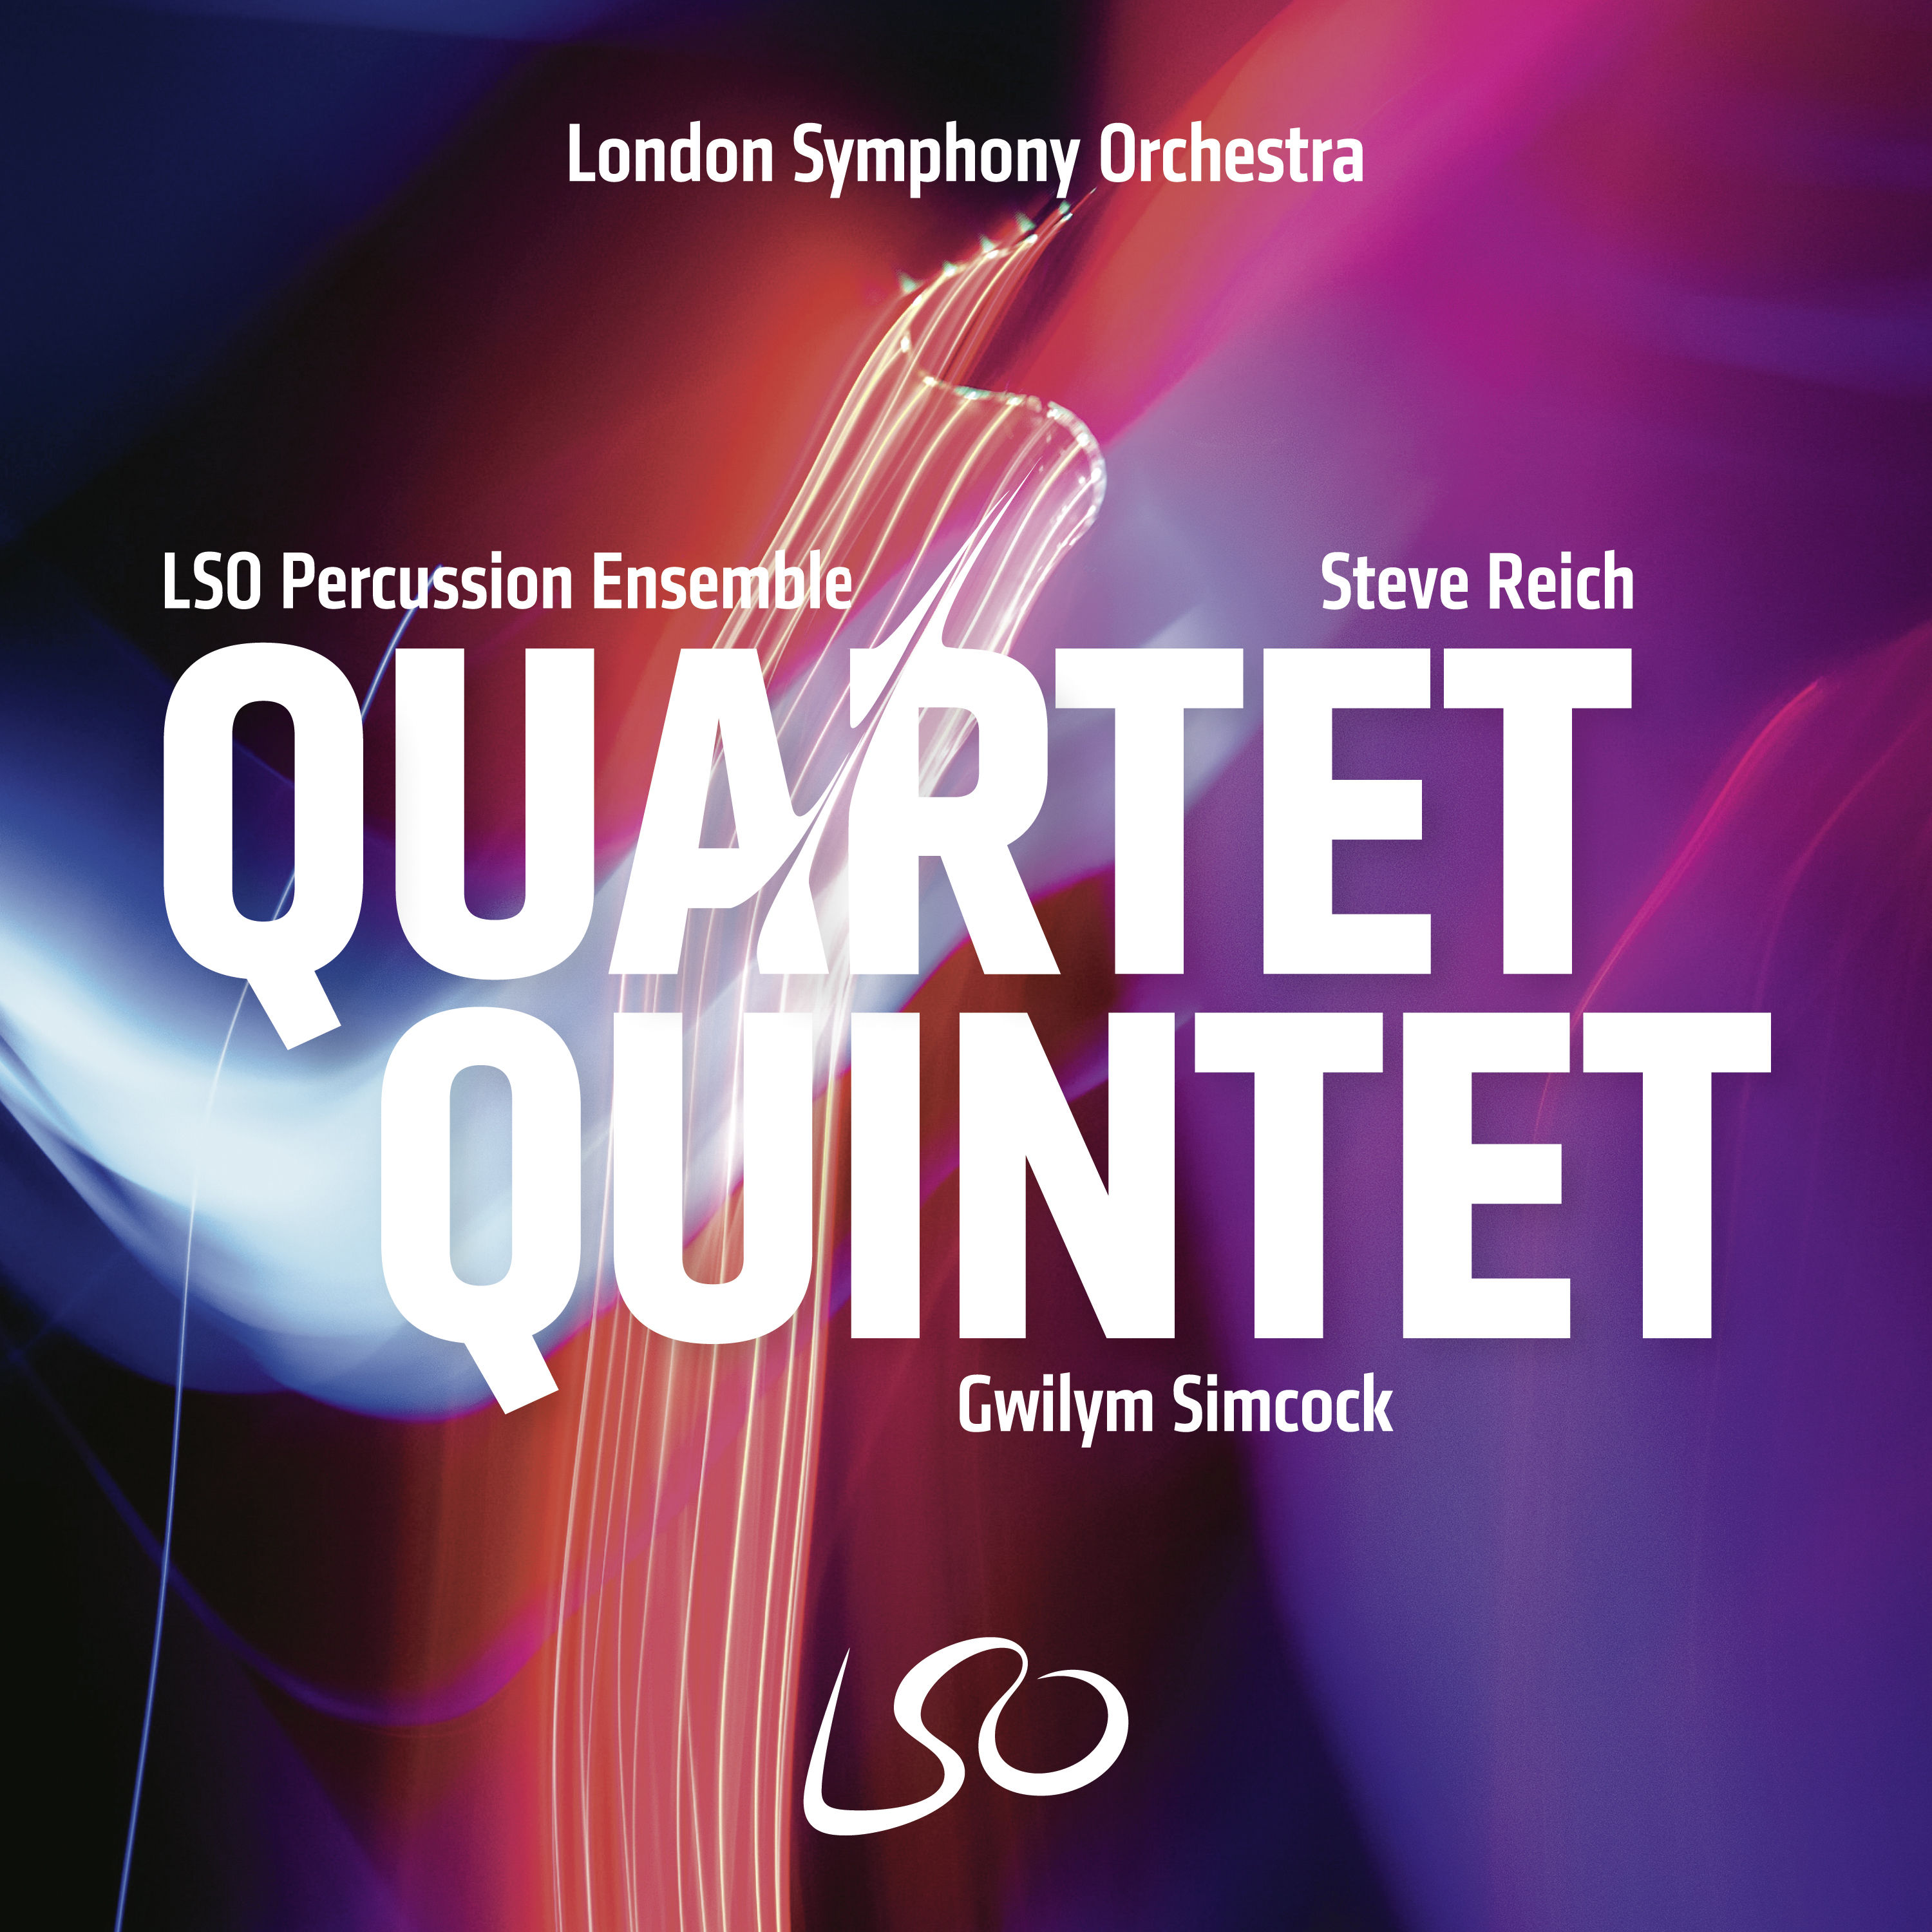 LSO Percussion Ensemble - Quartet Quintet (2020) [FLAC 24bit/96kHz]